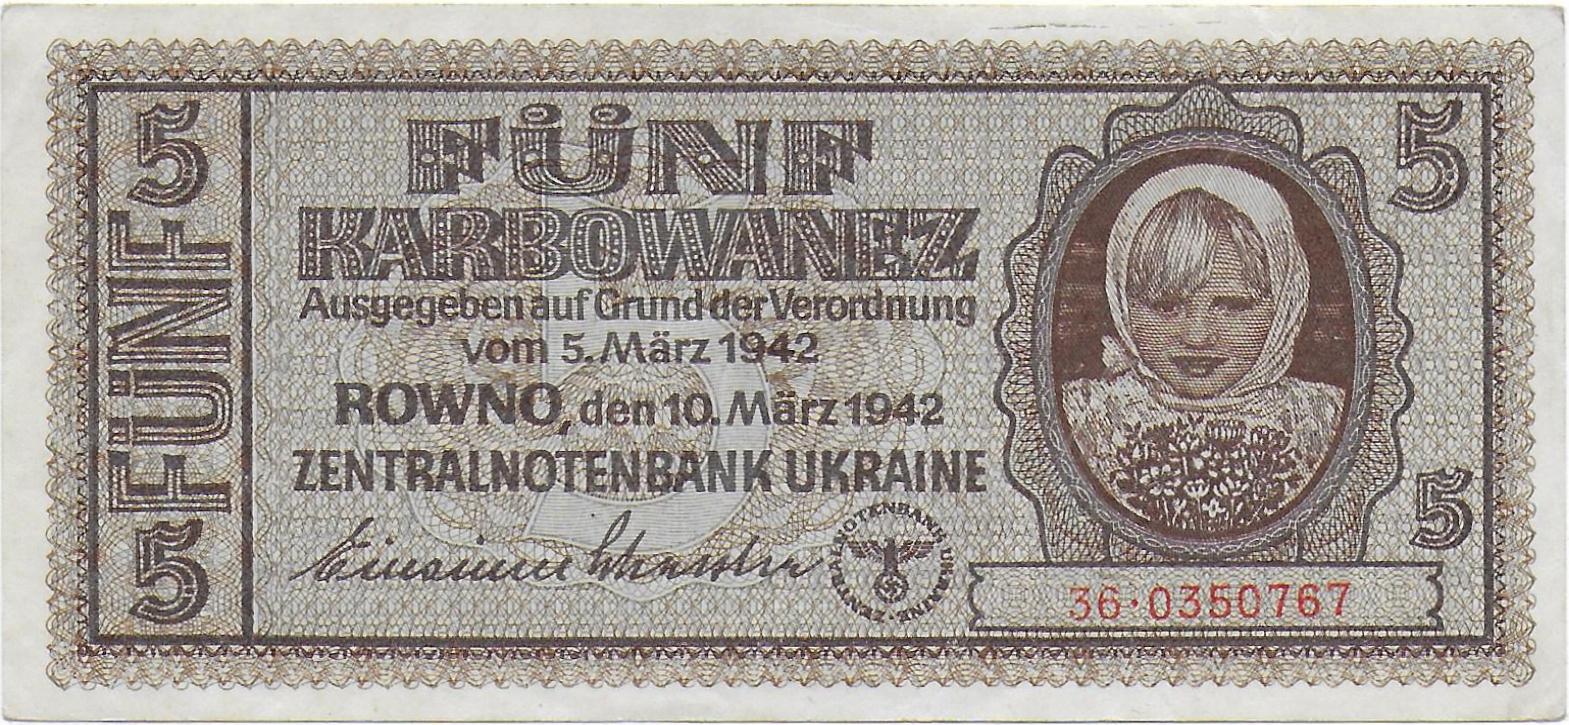 Ukraine 5 Karbovnetz 1942  front.jpg